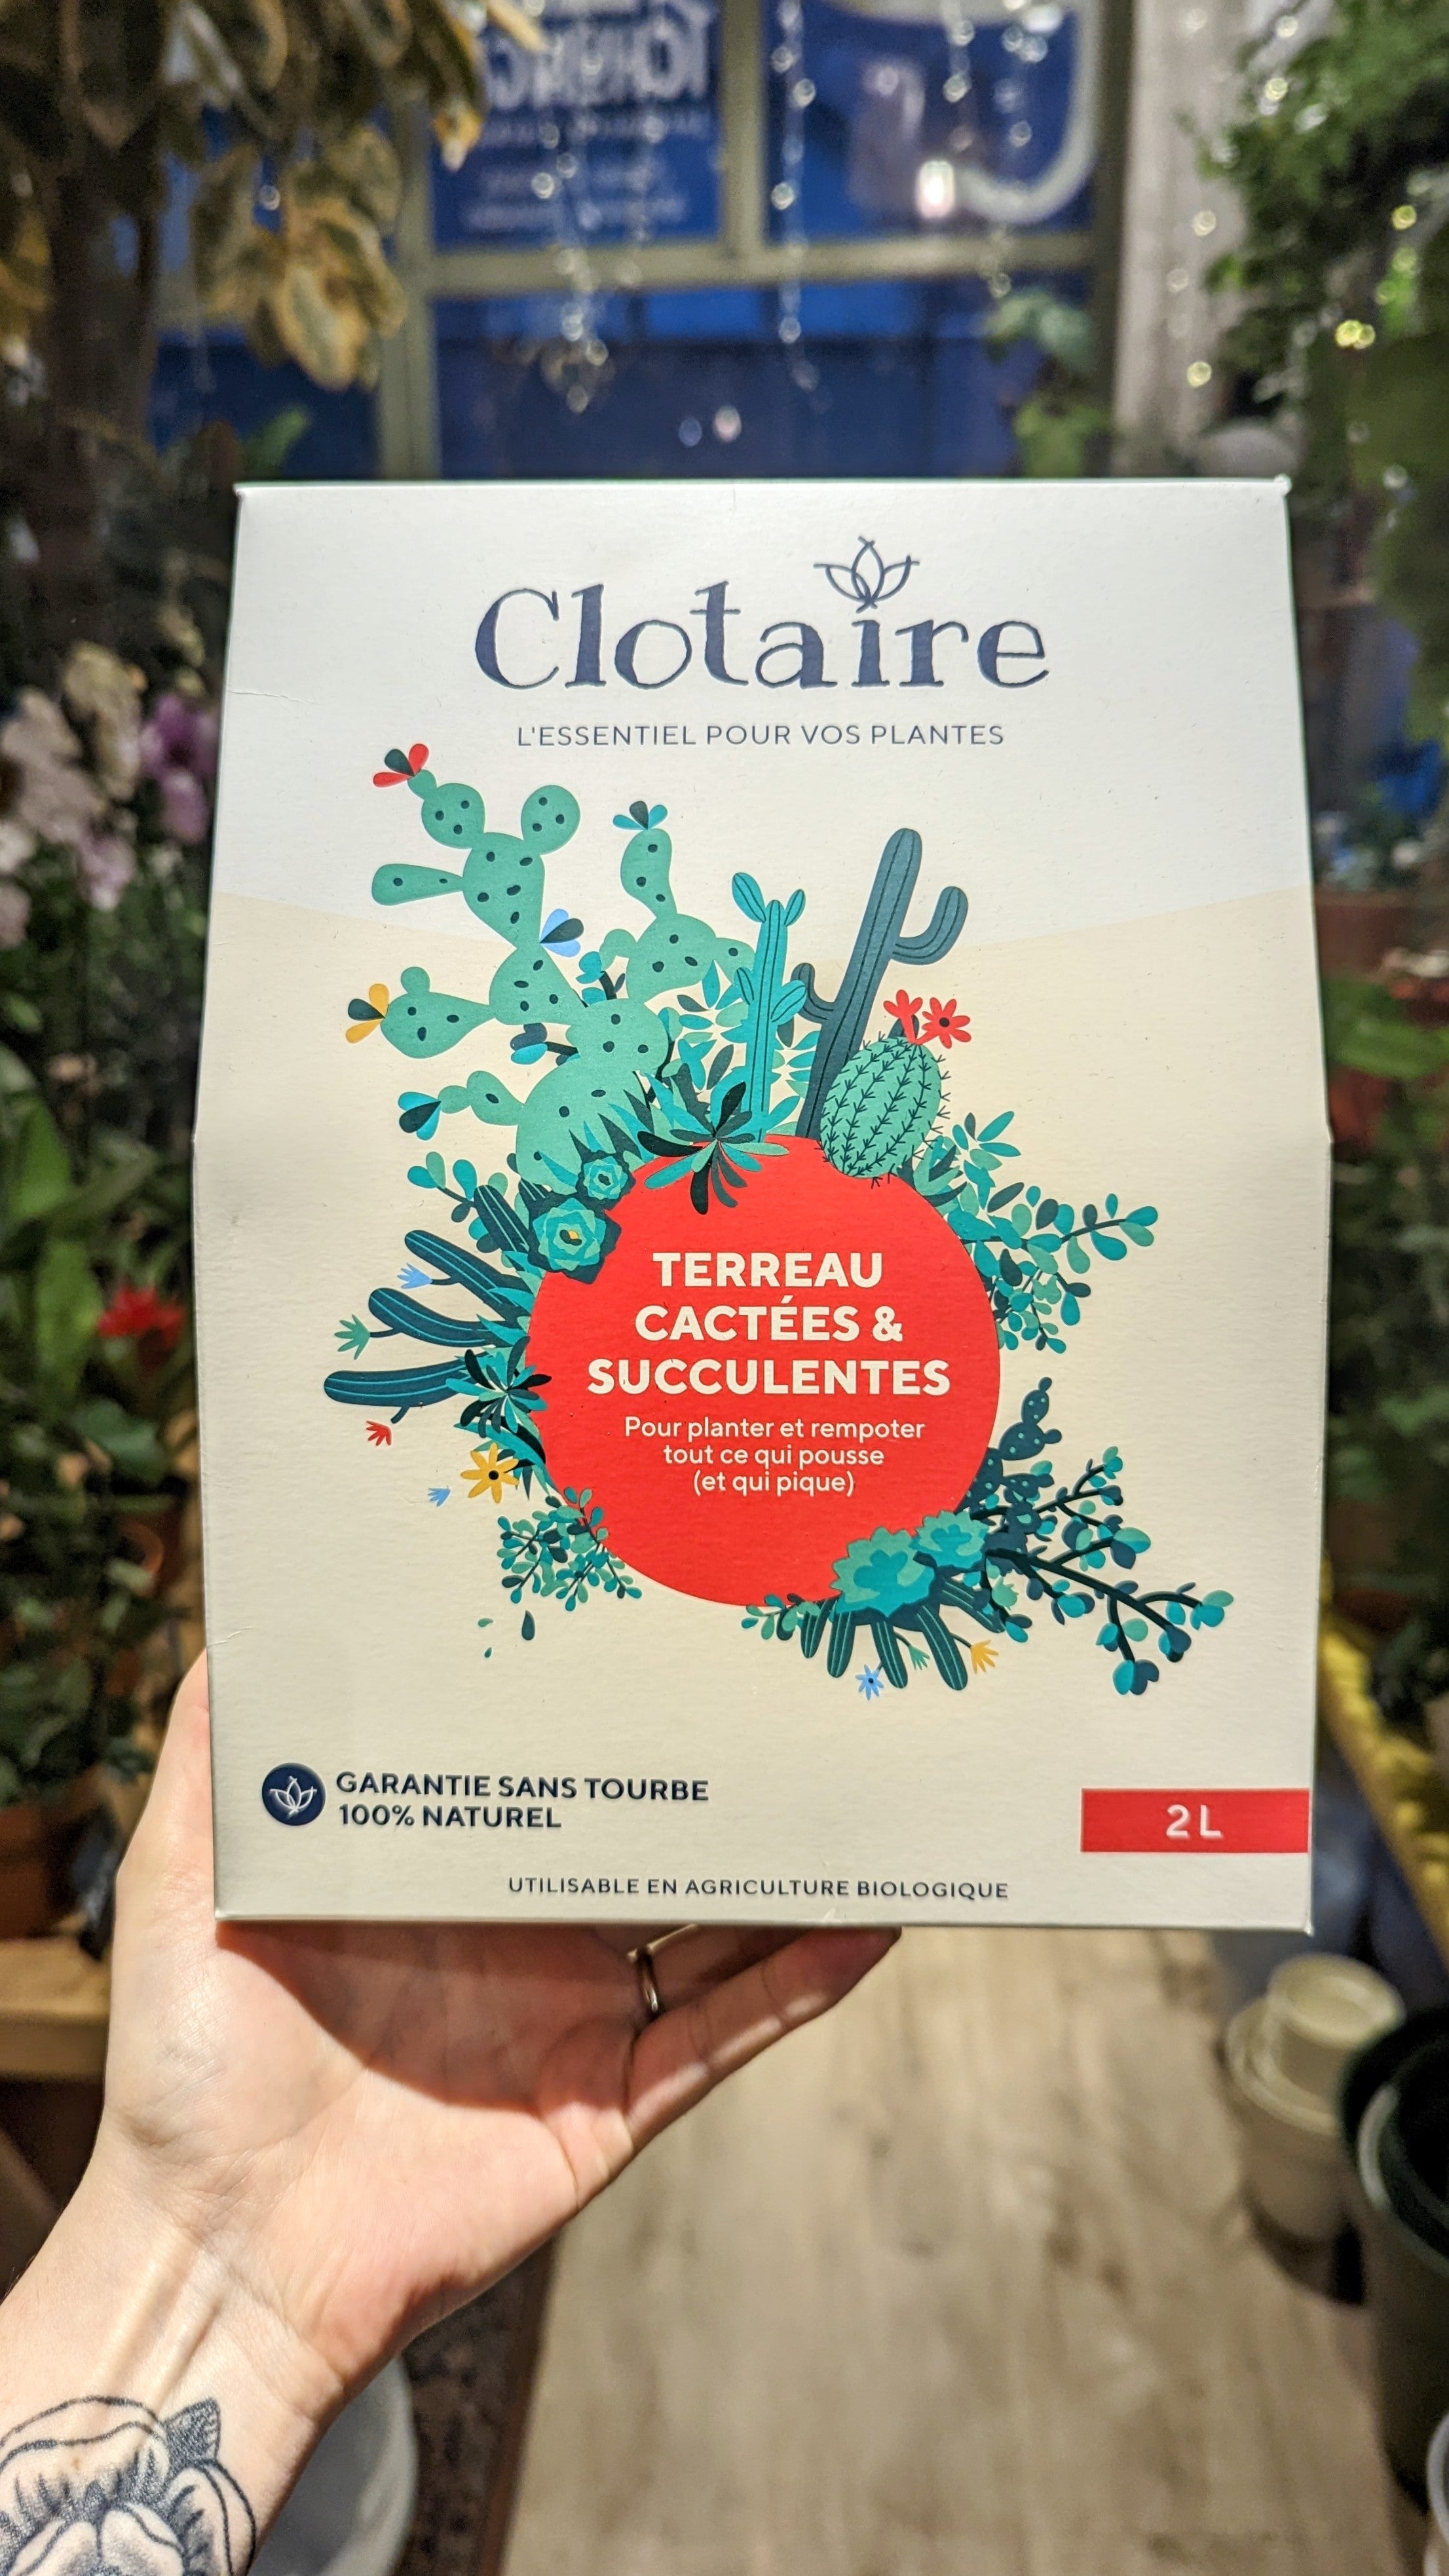 Terreau Universel - Clotaire – Tchungle